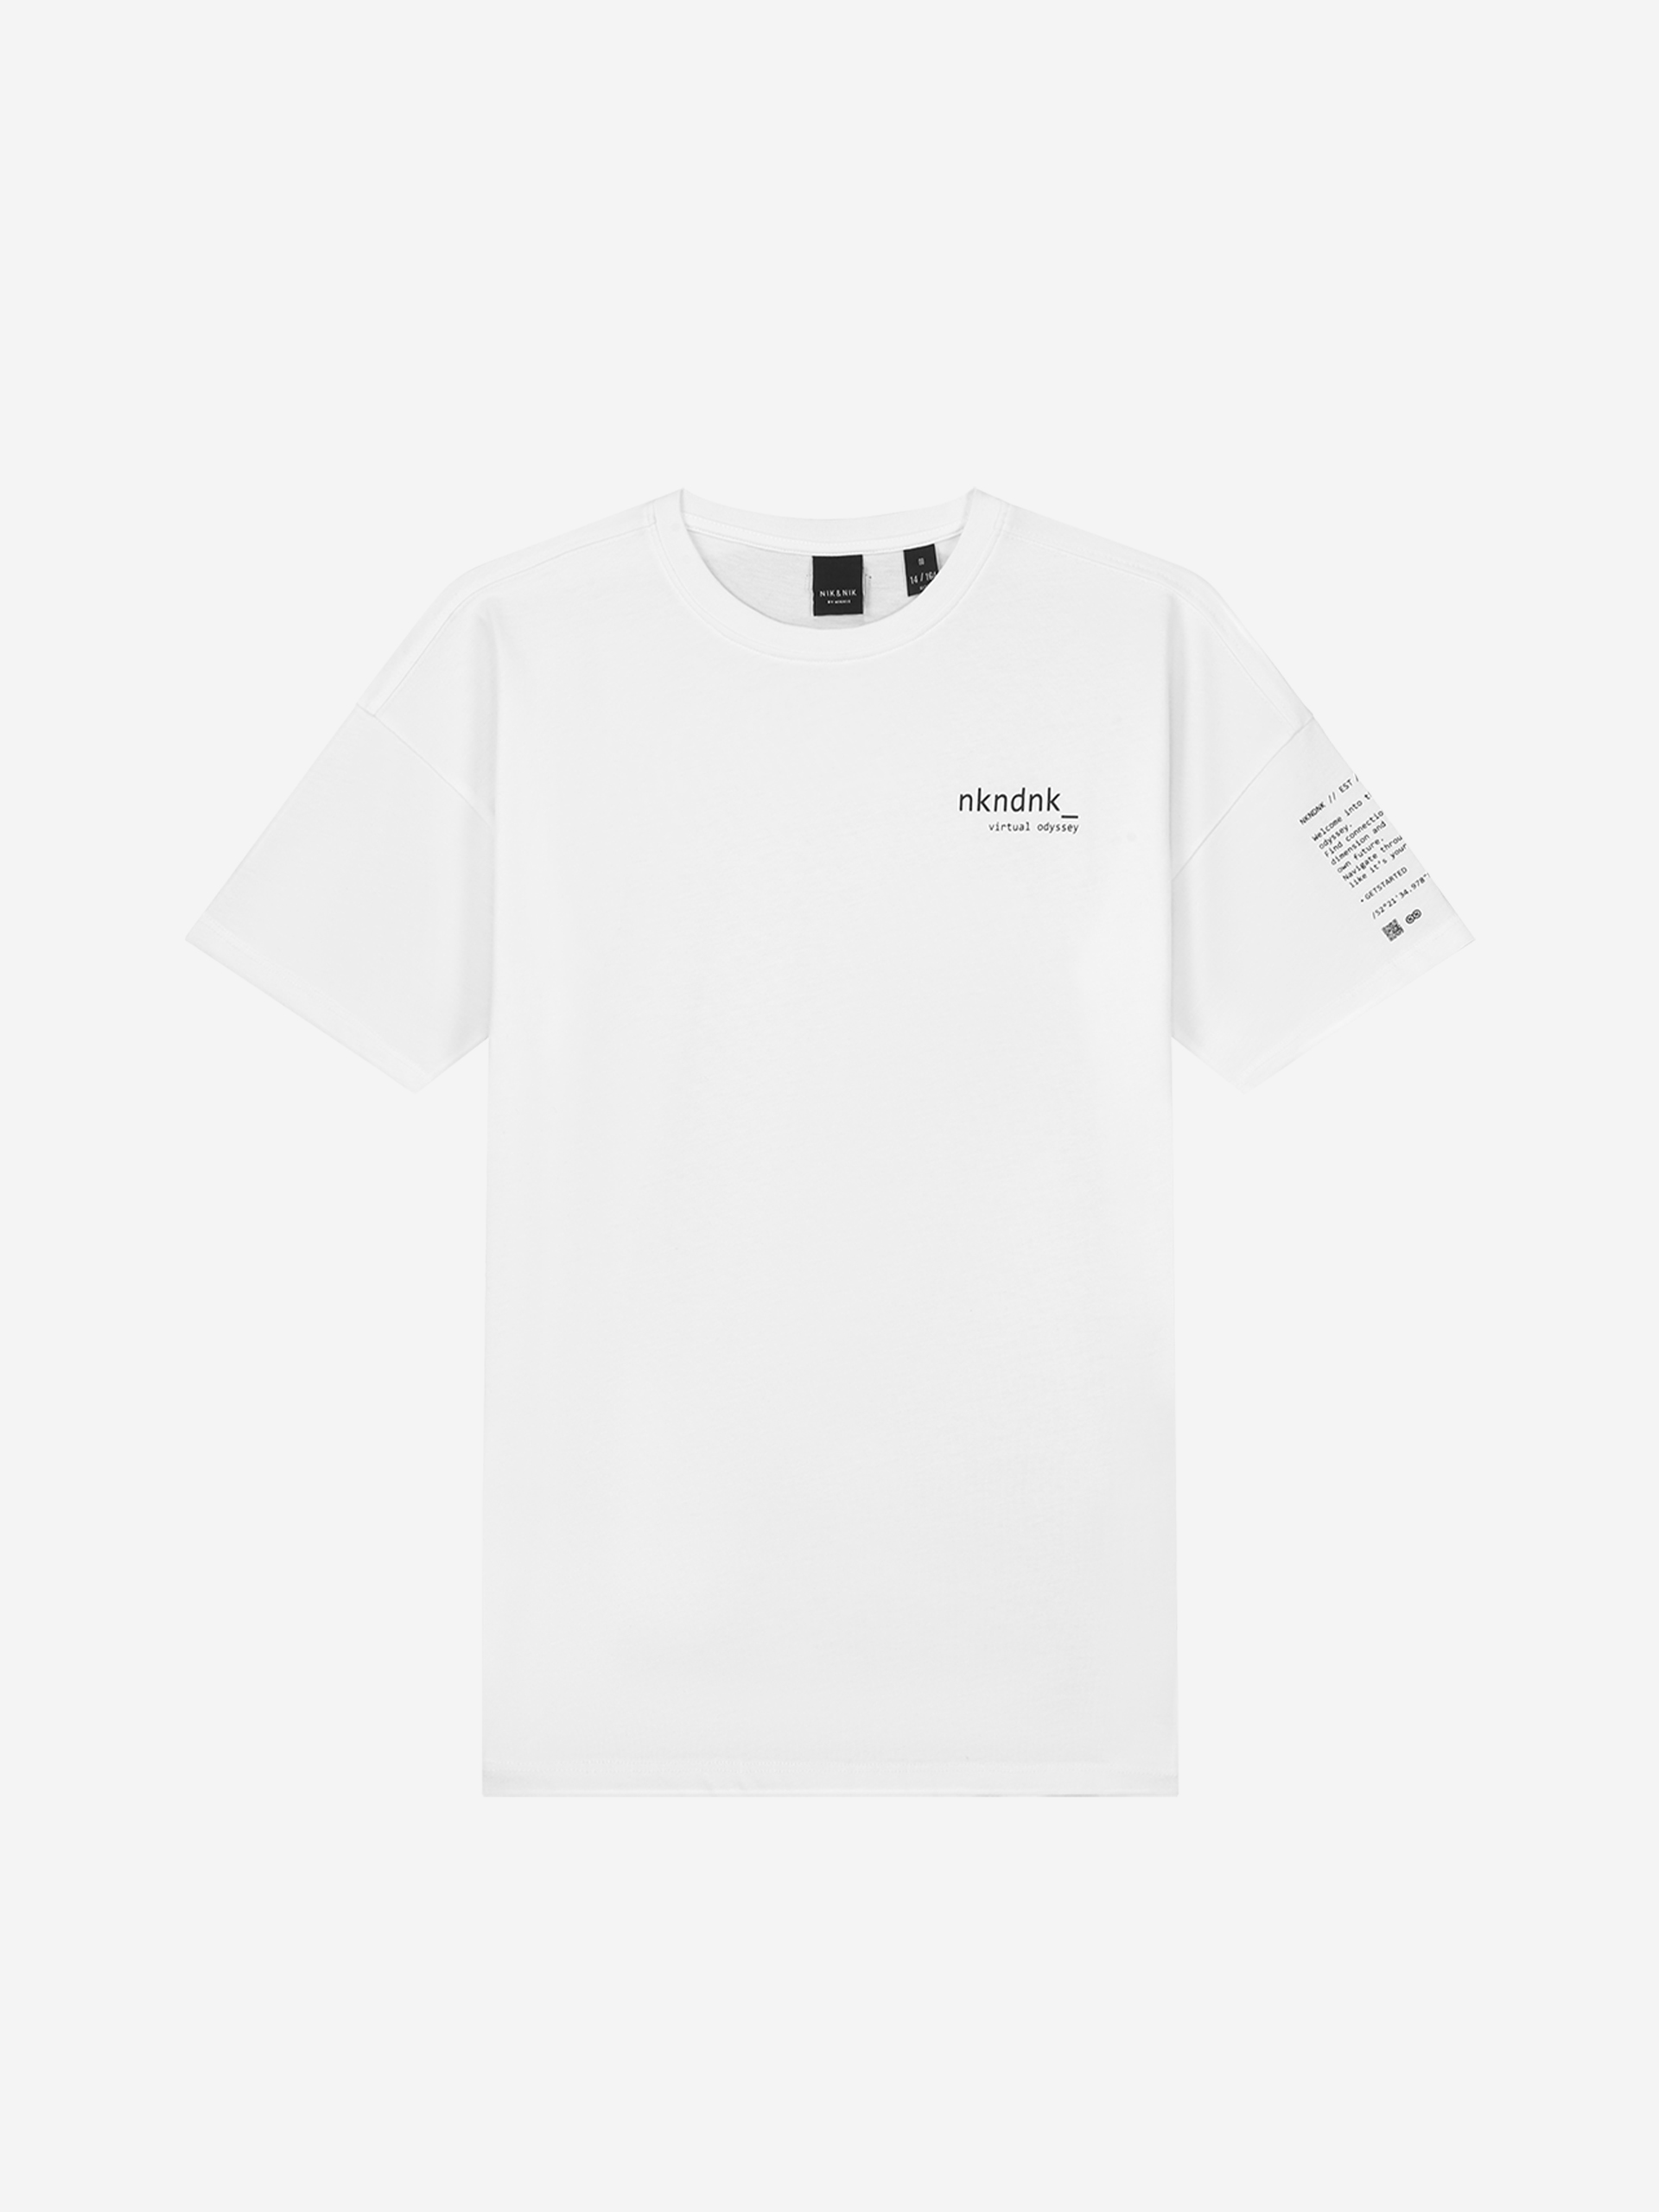 NKNDNK Digital t-shirt